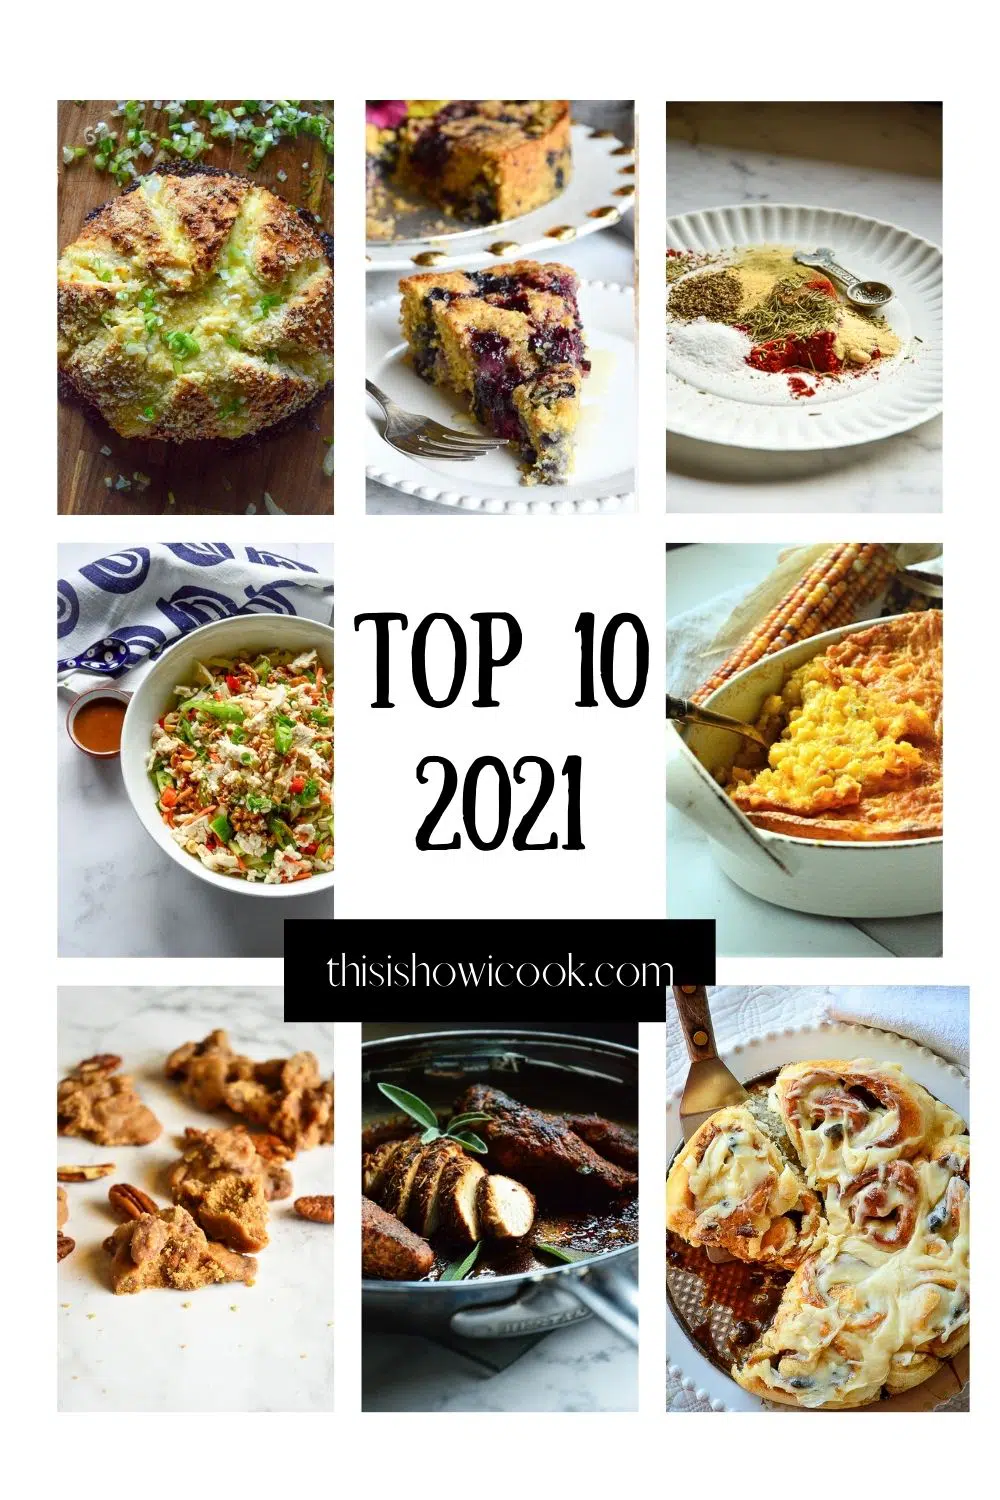 Top 10 Recipes 2021